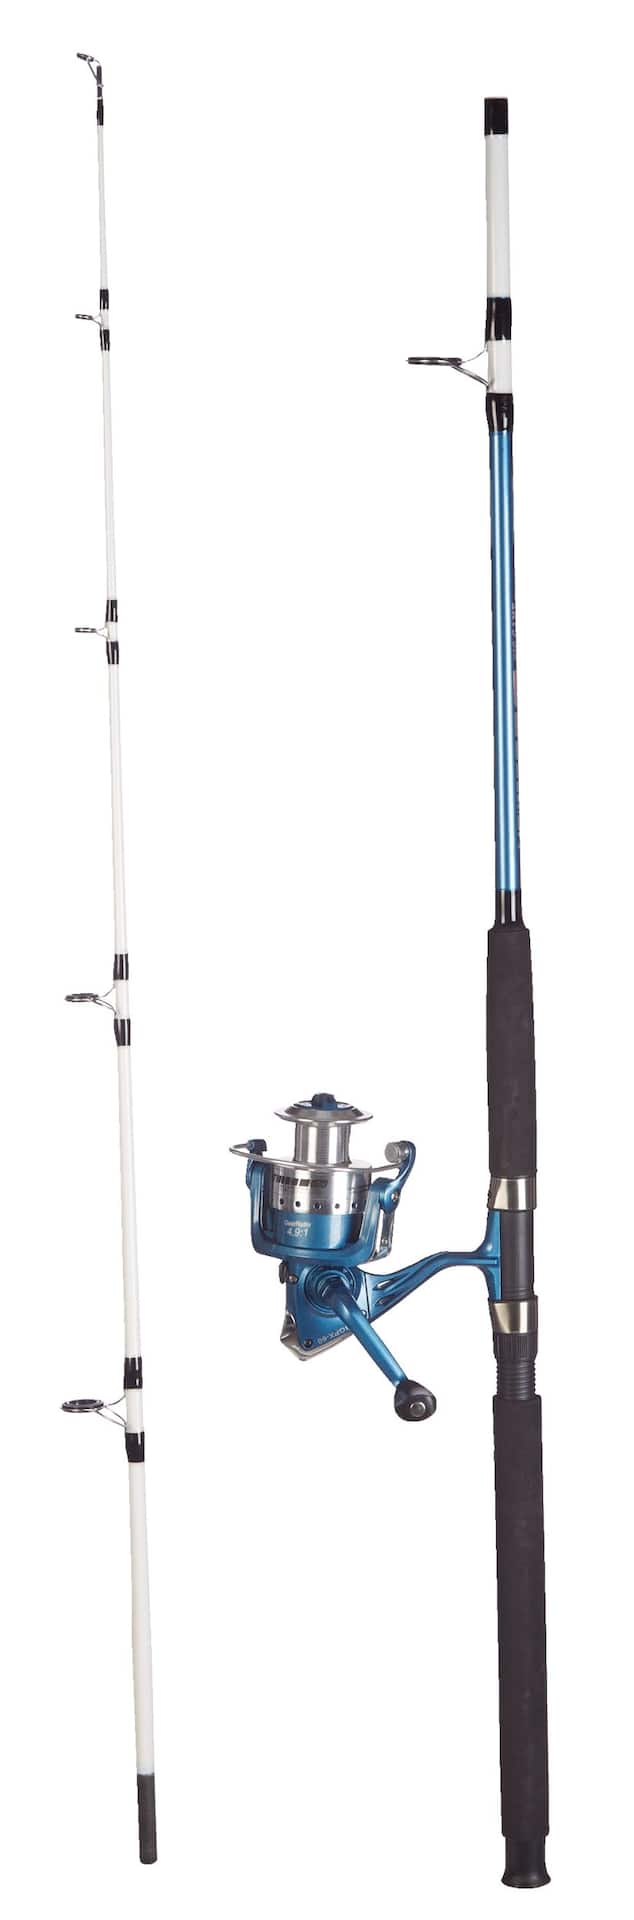 Berkley Big Game Spinning Fishing Rod, 8' Medium Heavy -2pcs